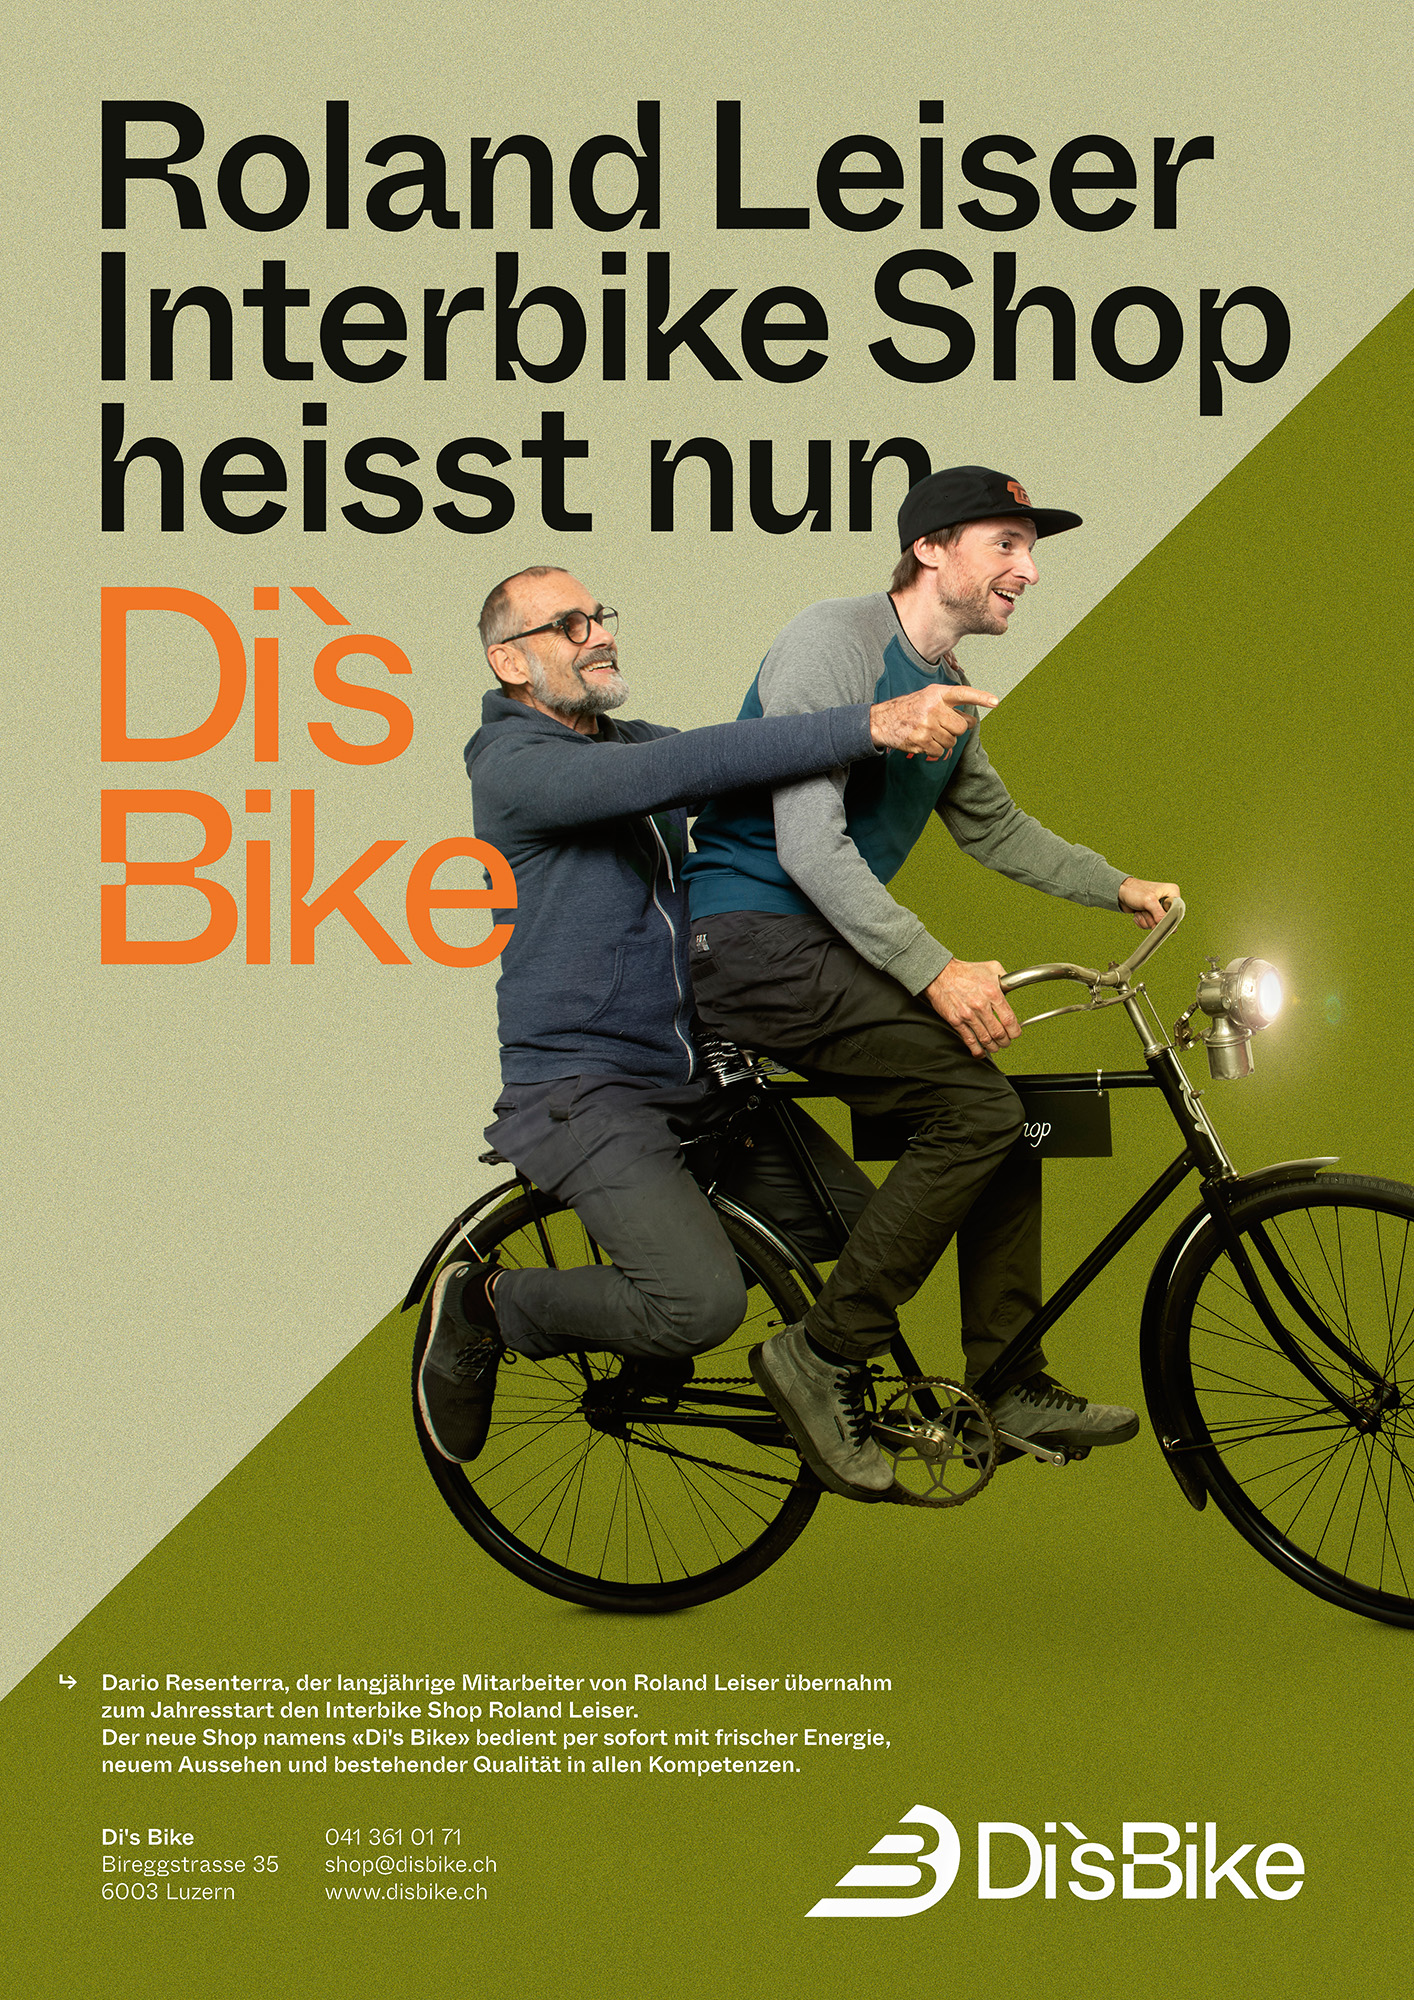 Interbike wird Di's Bike